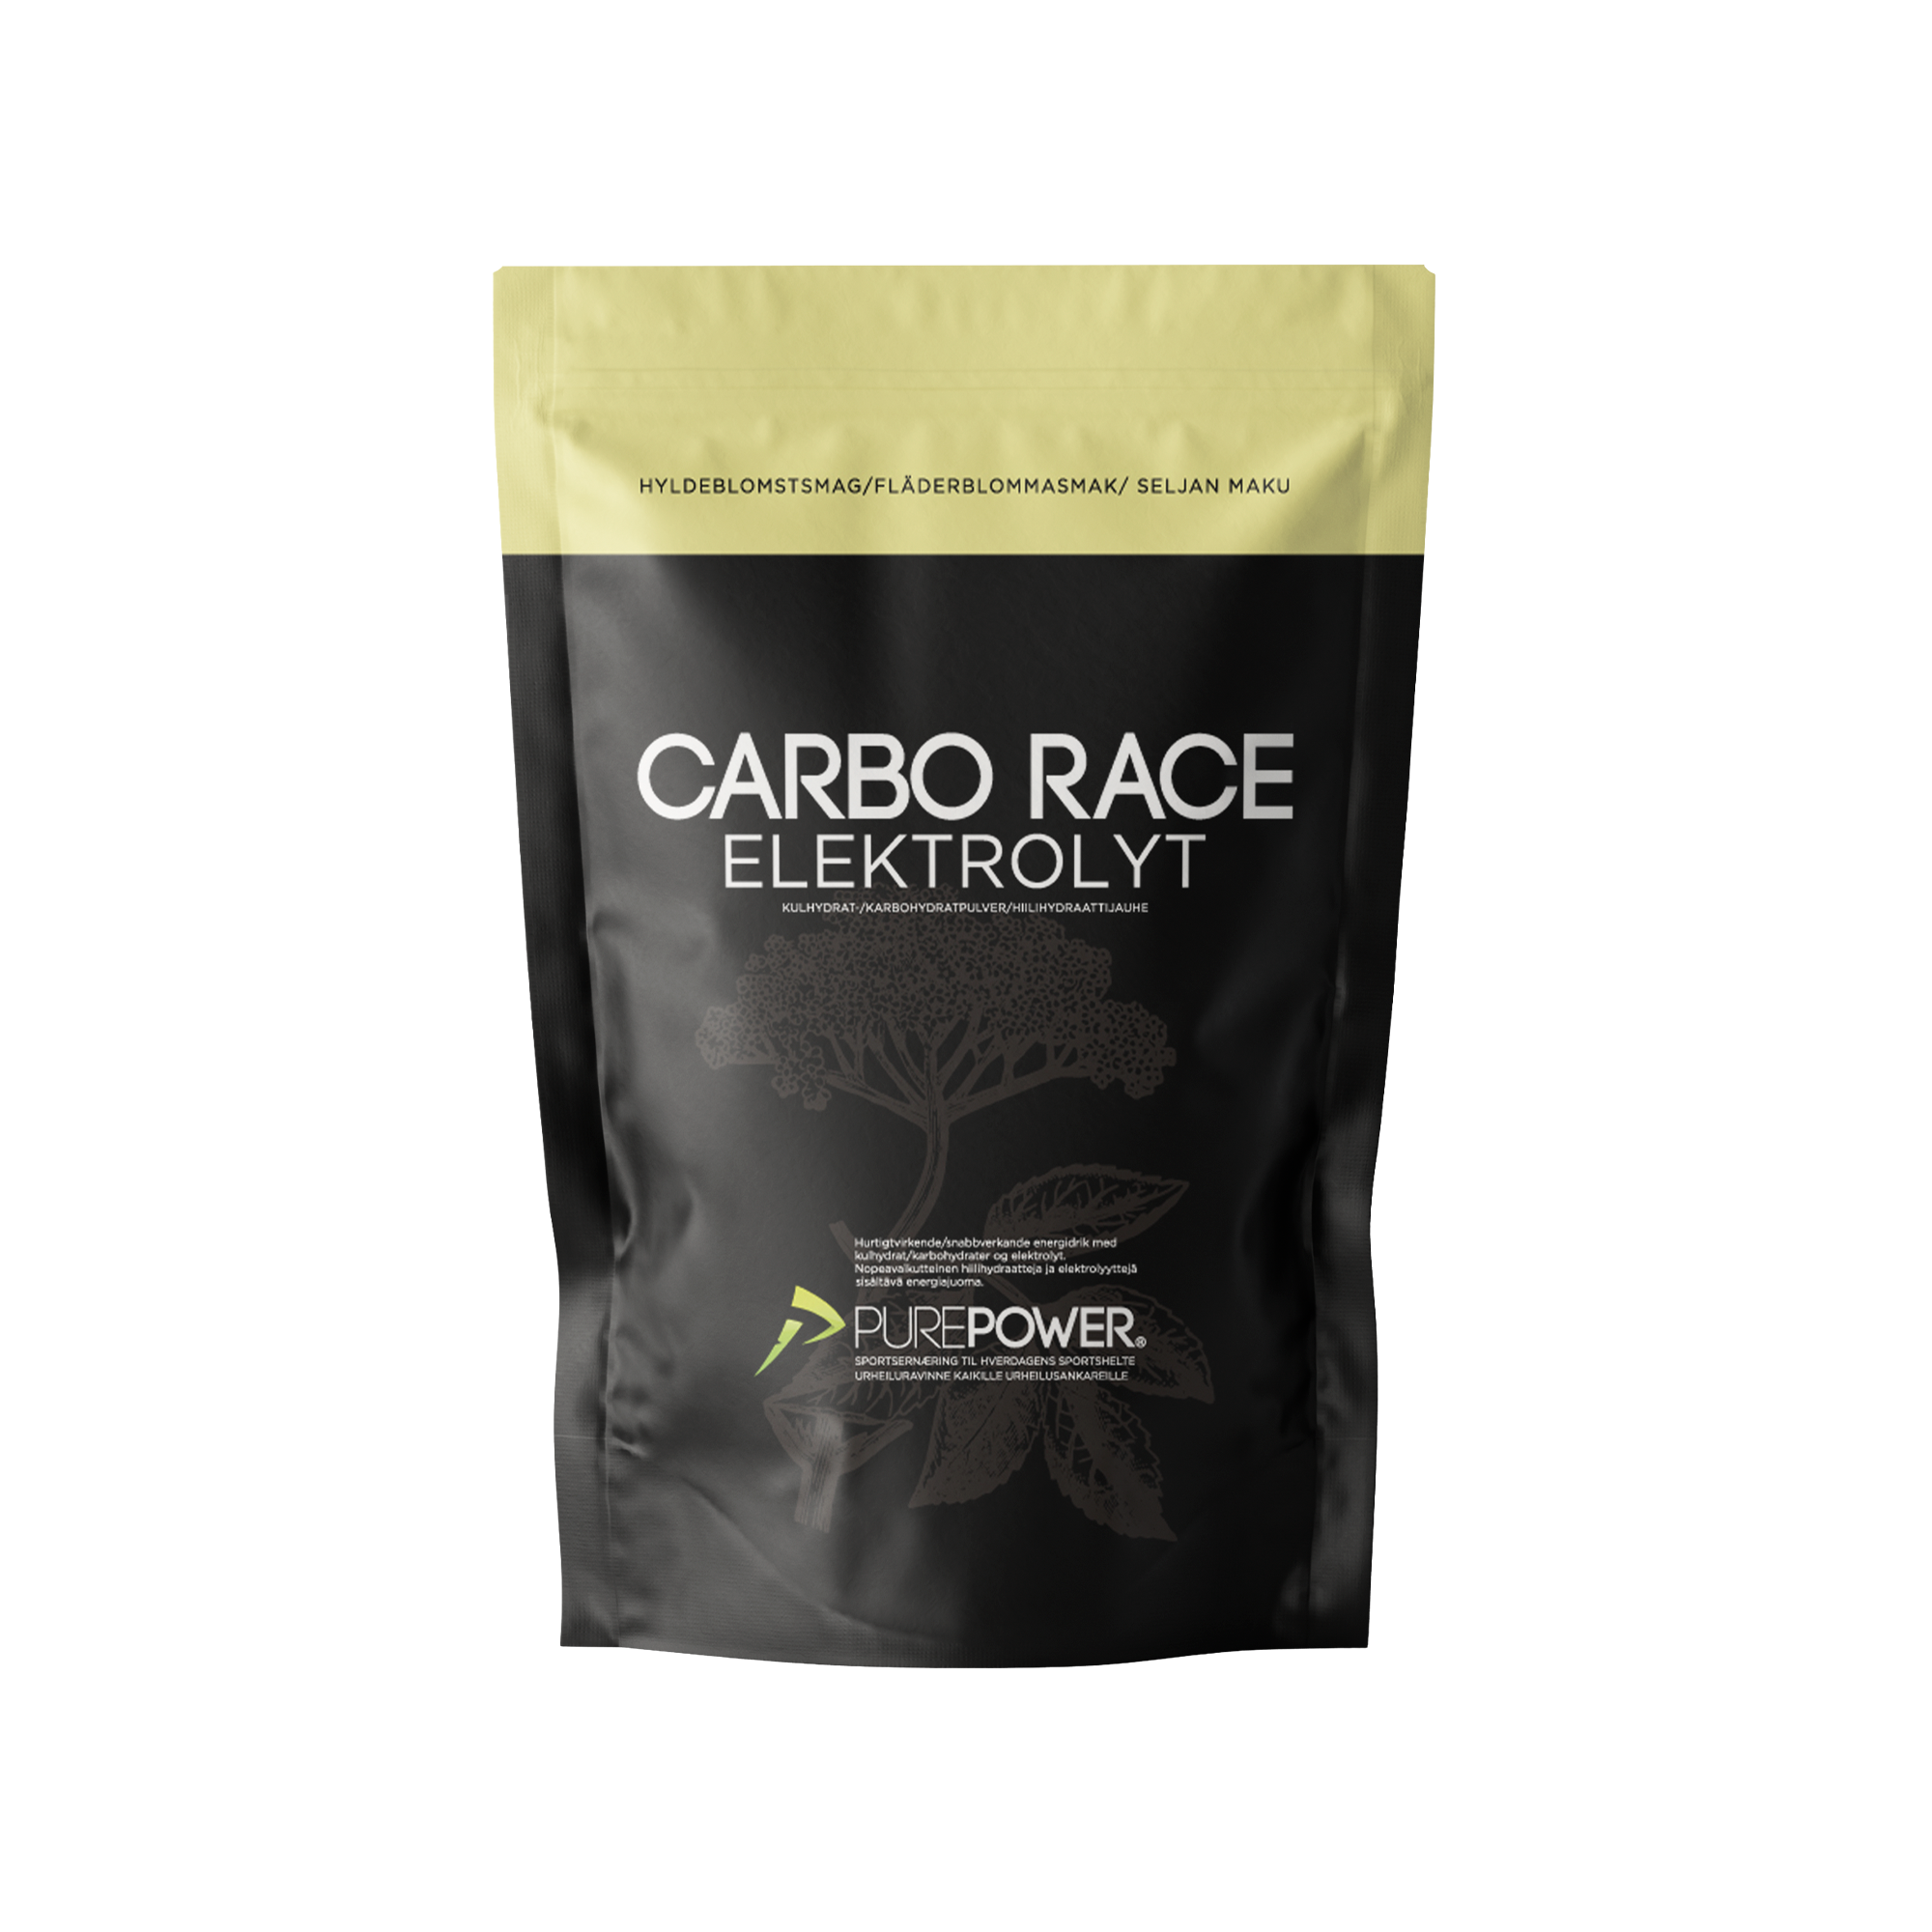 Billede af Carbo Race Elektrolyt Hyldeblomst 1 kg hos PurePower